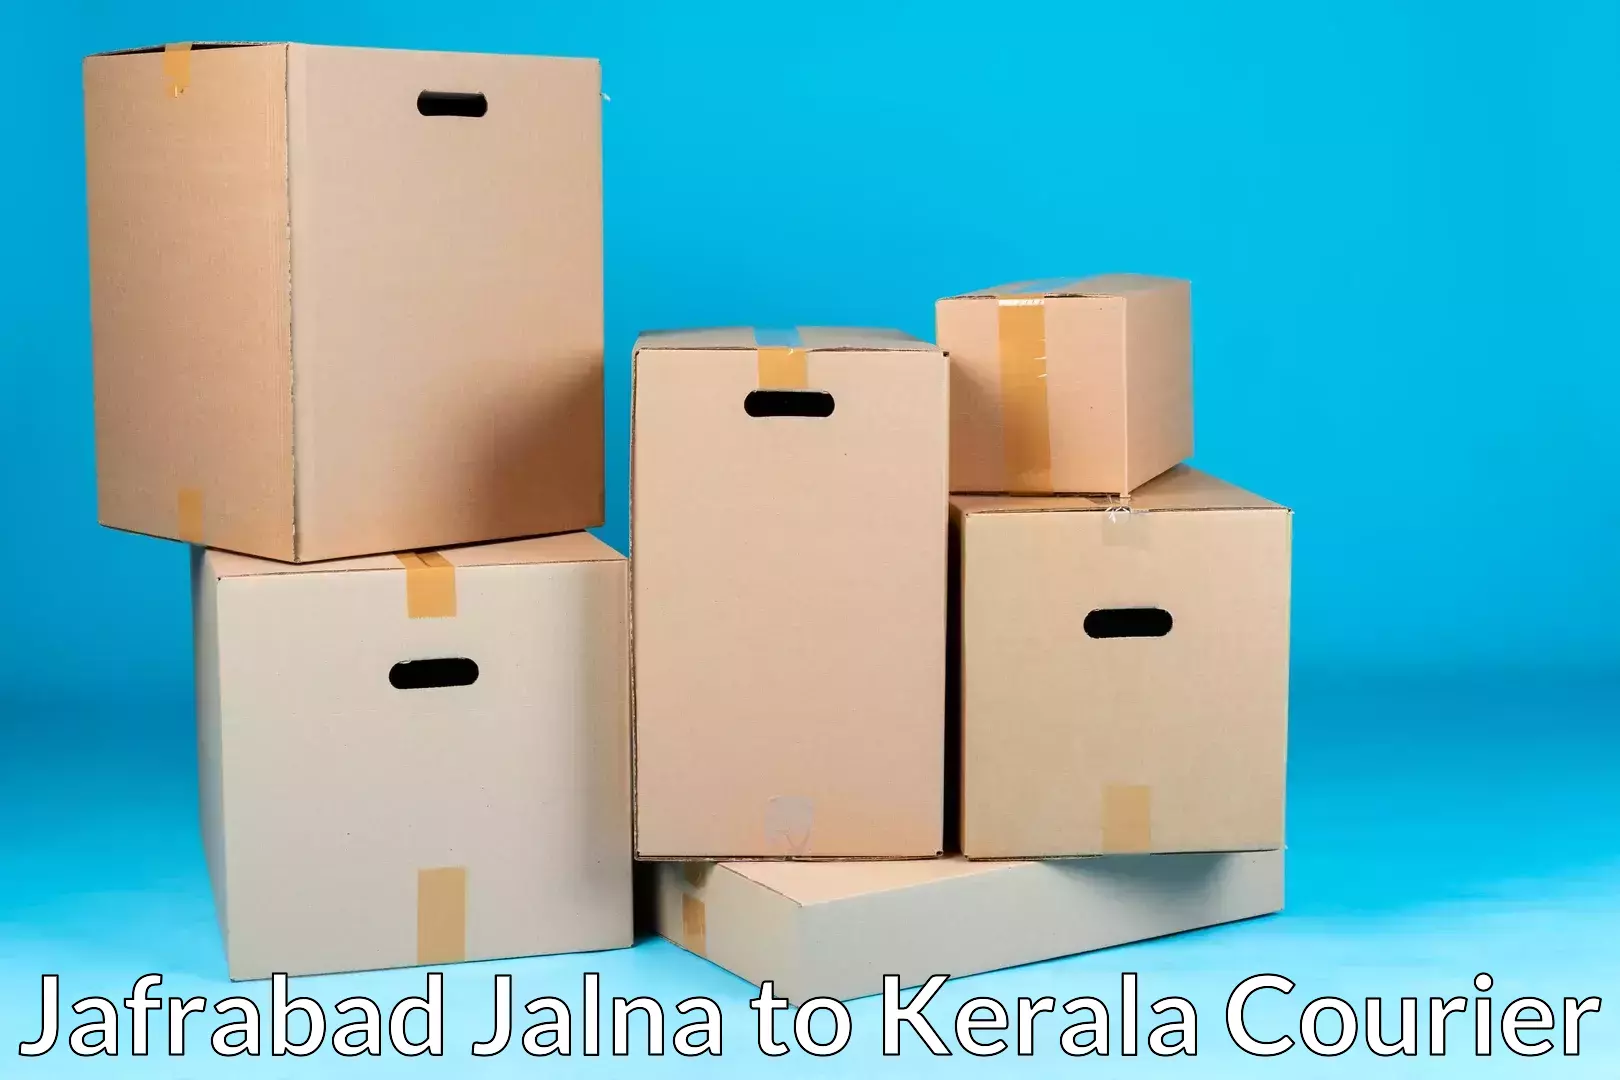 Personalized moving and storage Jafrabad Jalna to Mahatma Gandhi University Kottayam